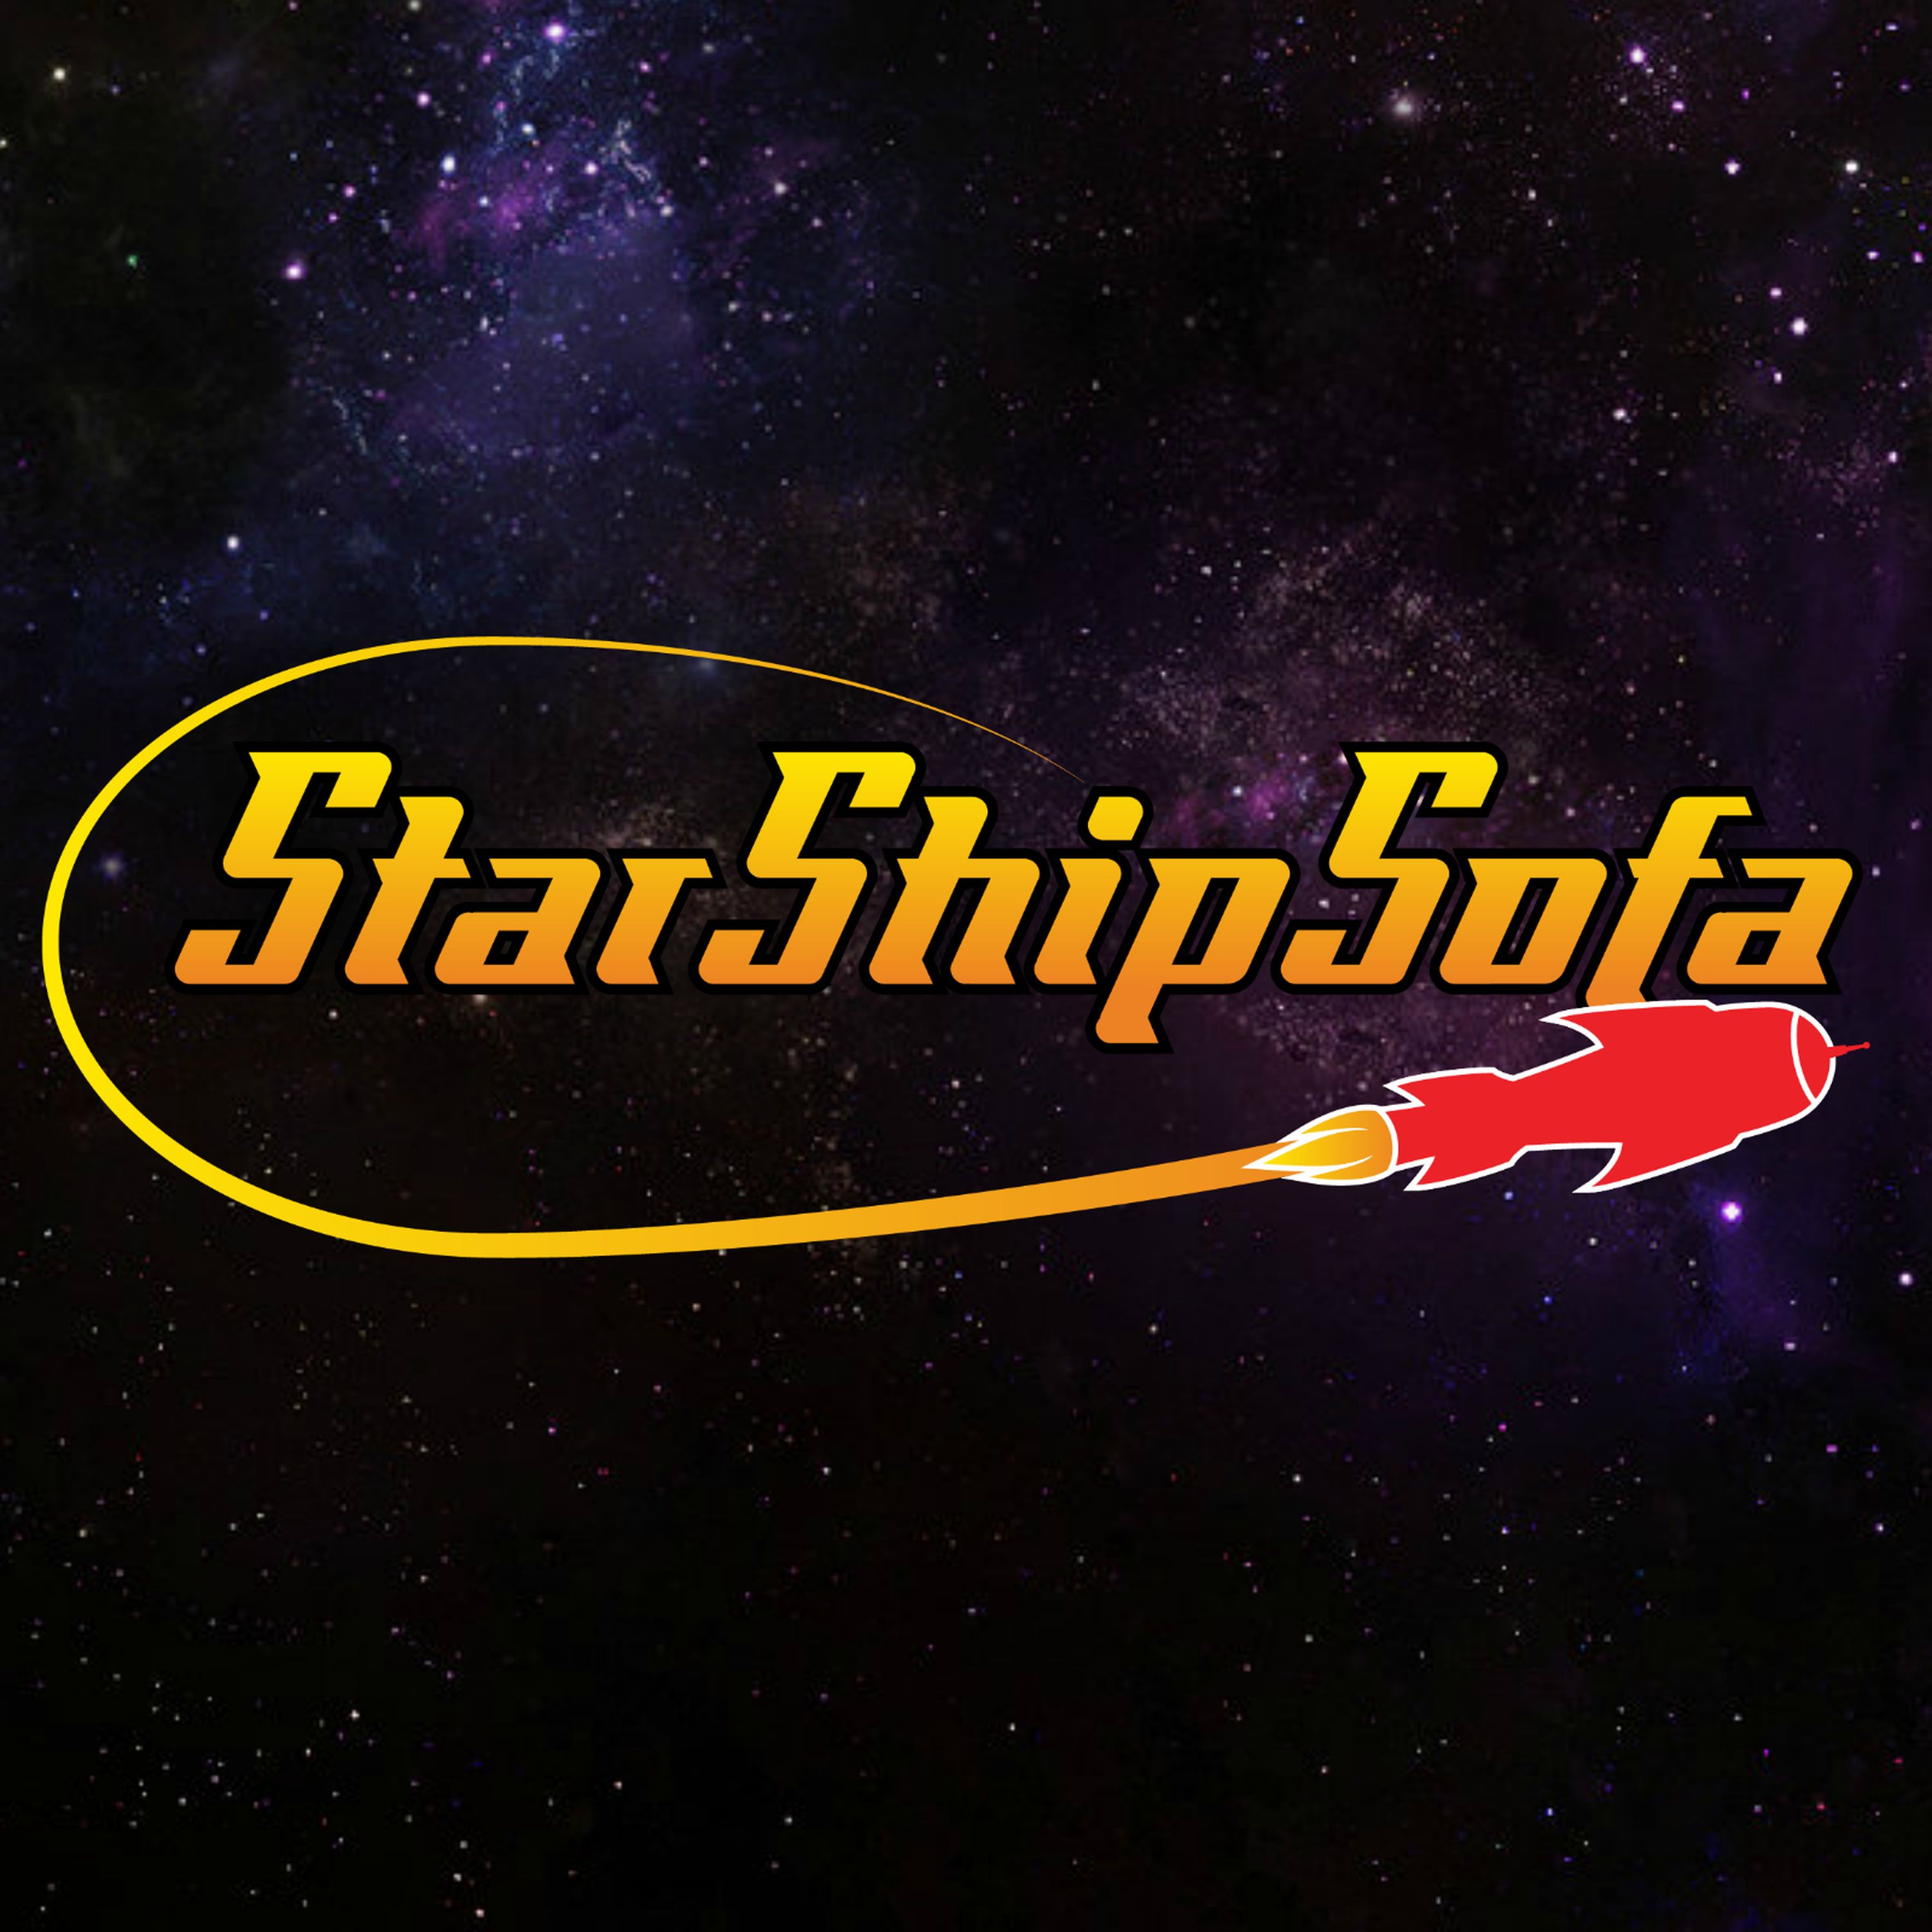 StarShipSofa No 654 Aaron Moskalik